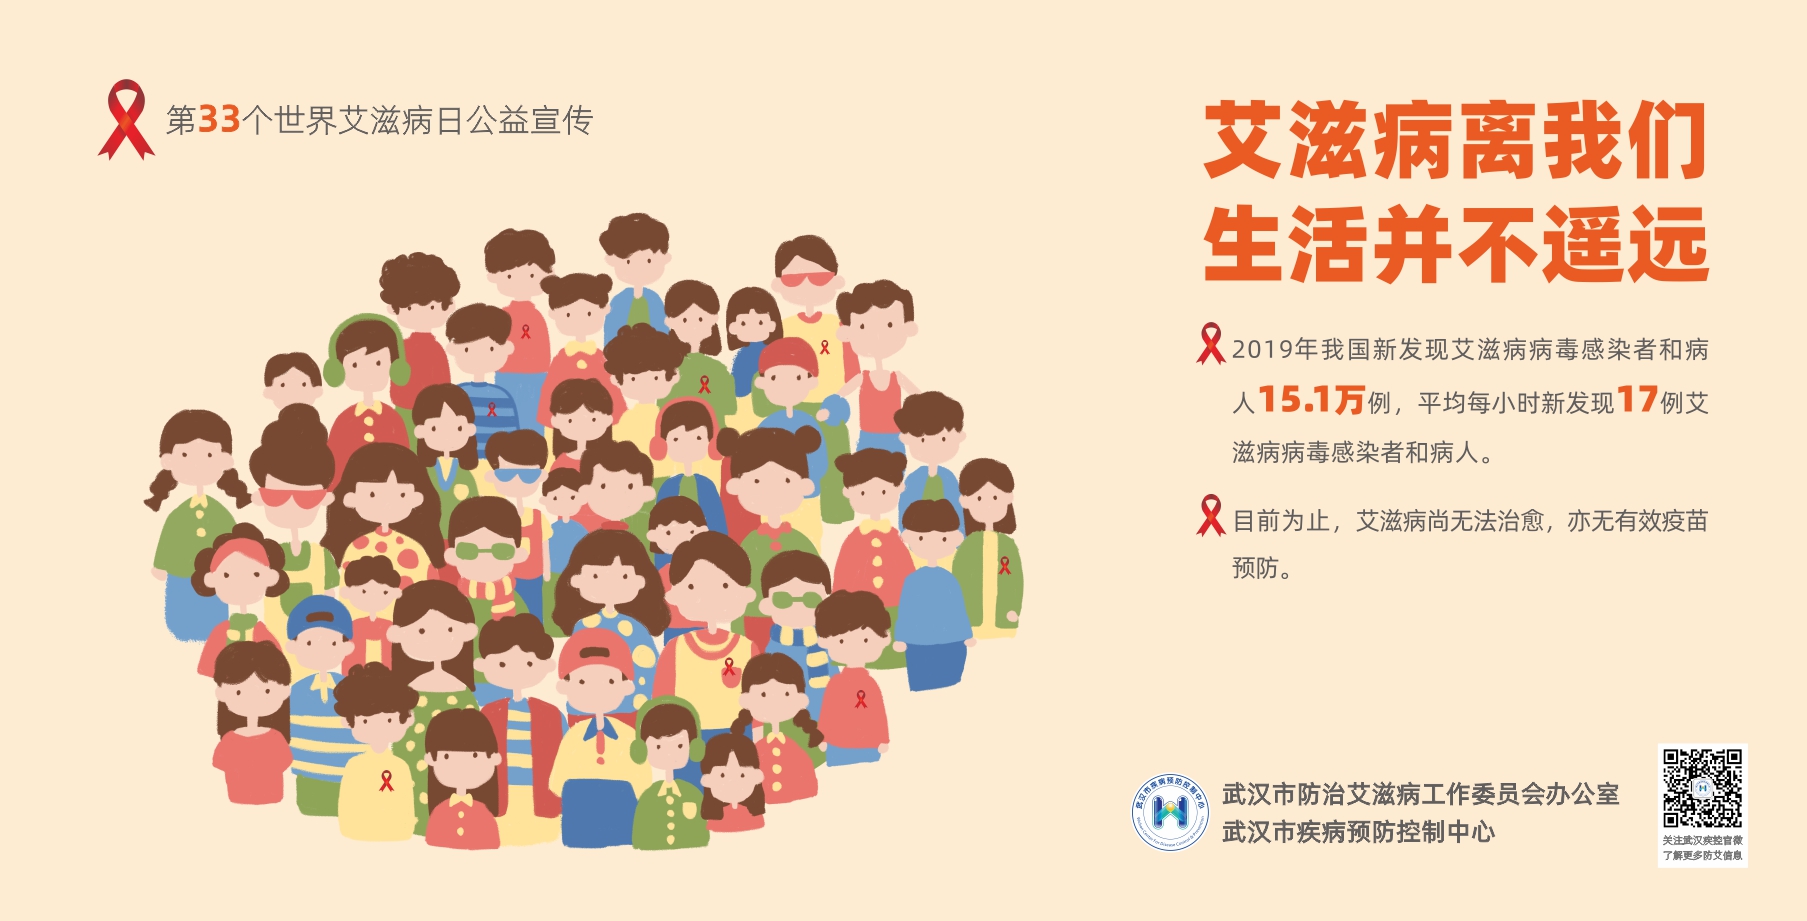 武汉地铁艾滋病宣传广告画面1.jpg